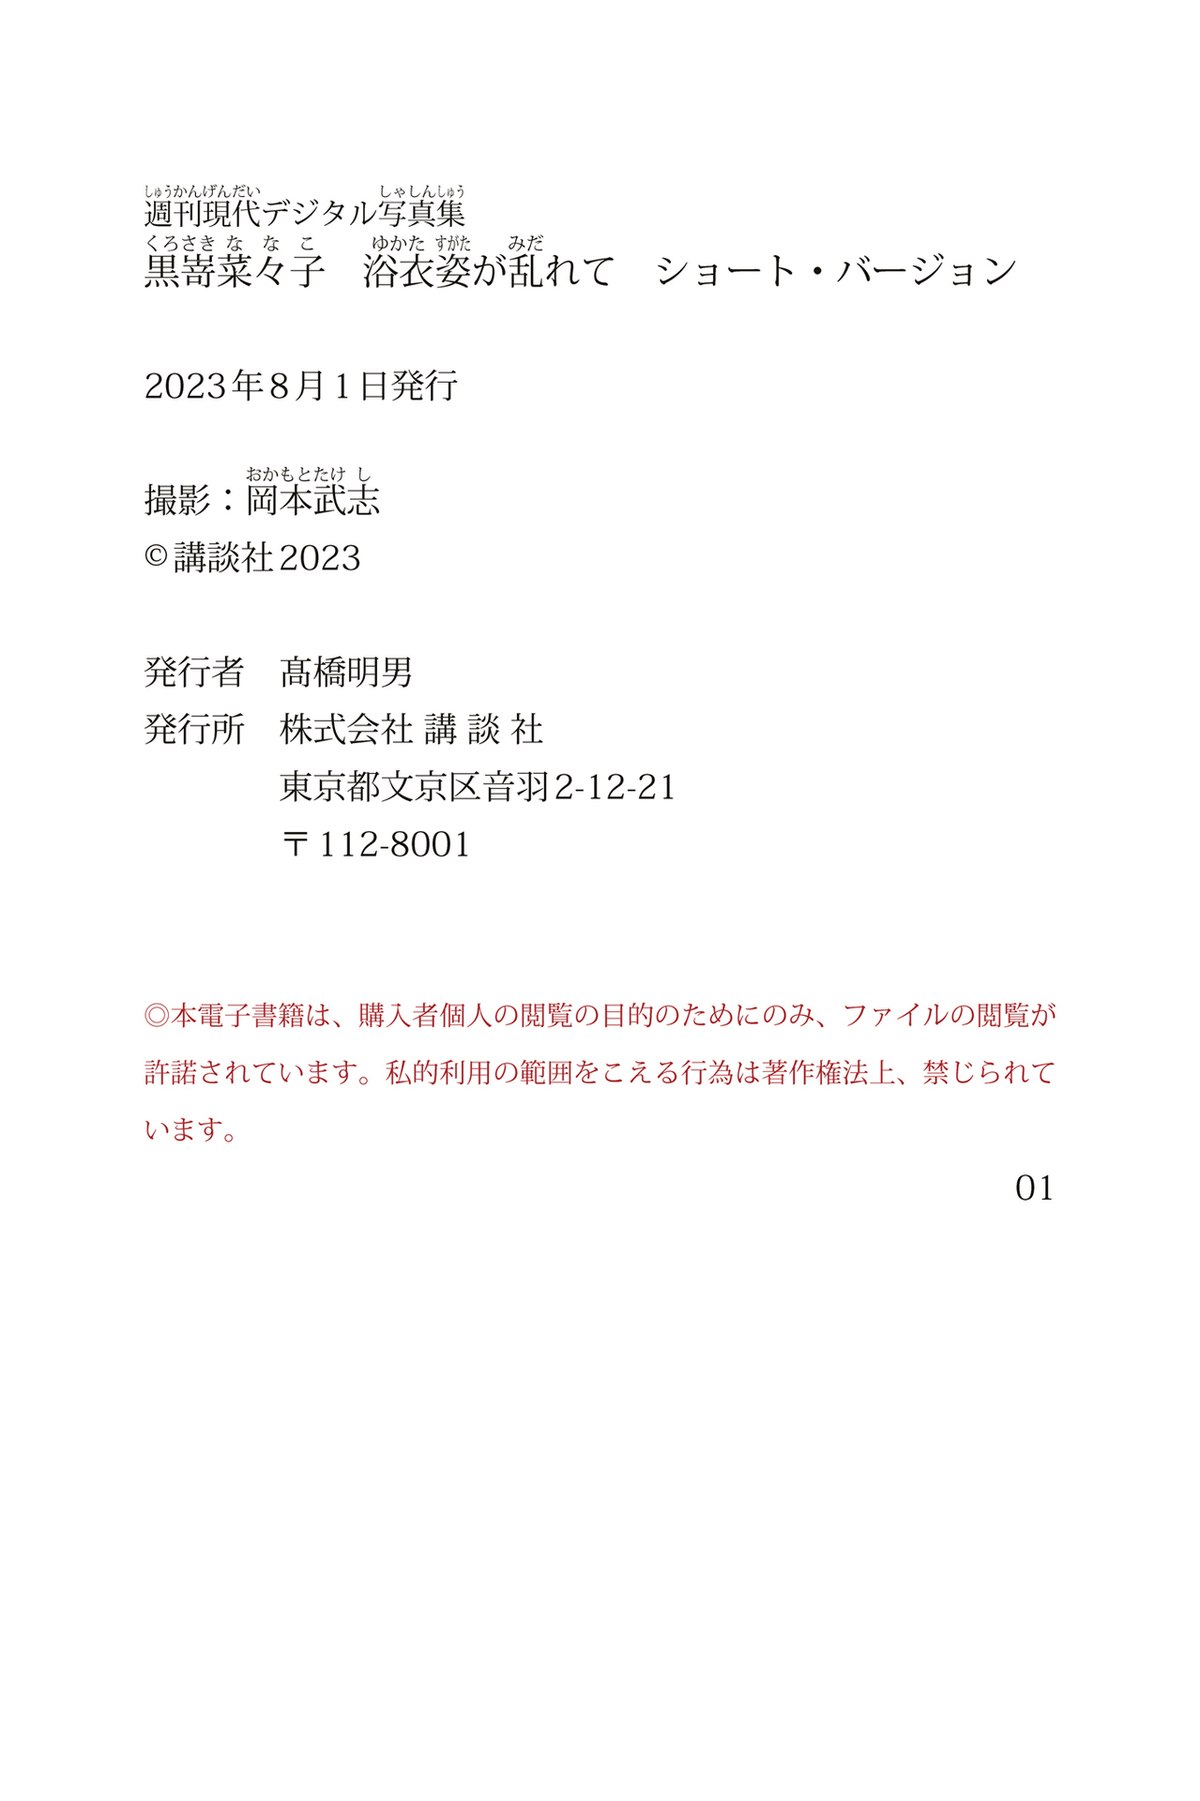 Weekly Gendai Photobook 2023 07 28 Nanako Kurosaki 黒嵜菜々子 Yukata In Disarray 0065 3248682678.jpg